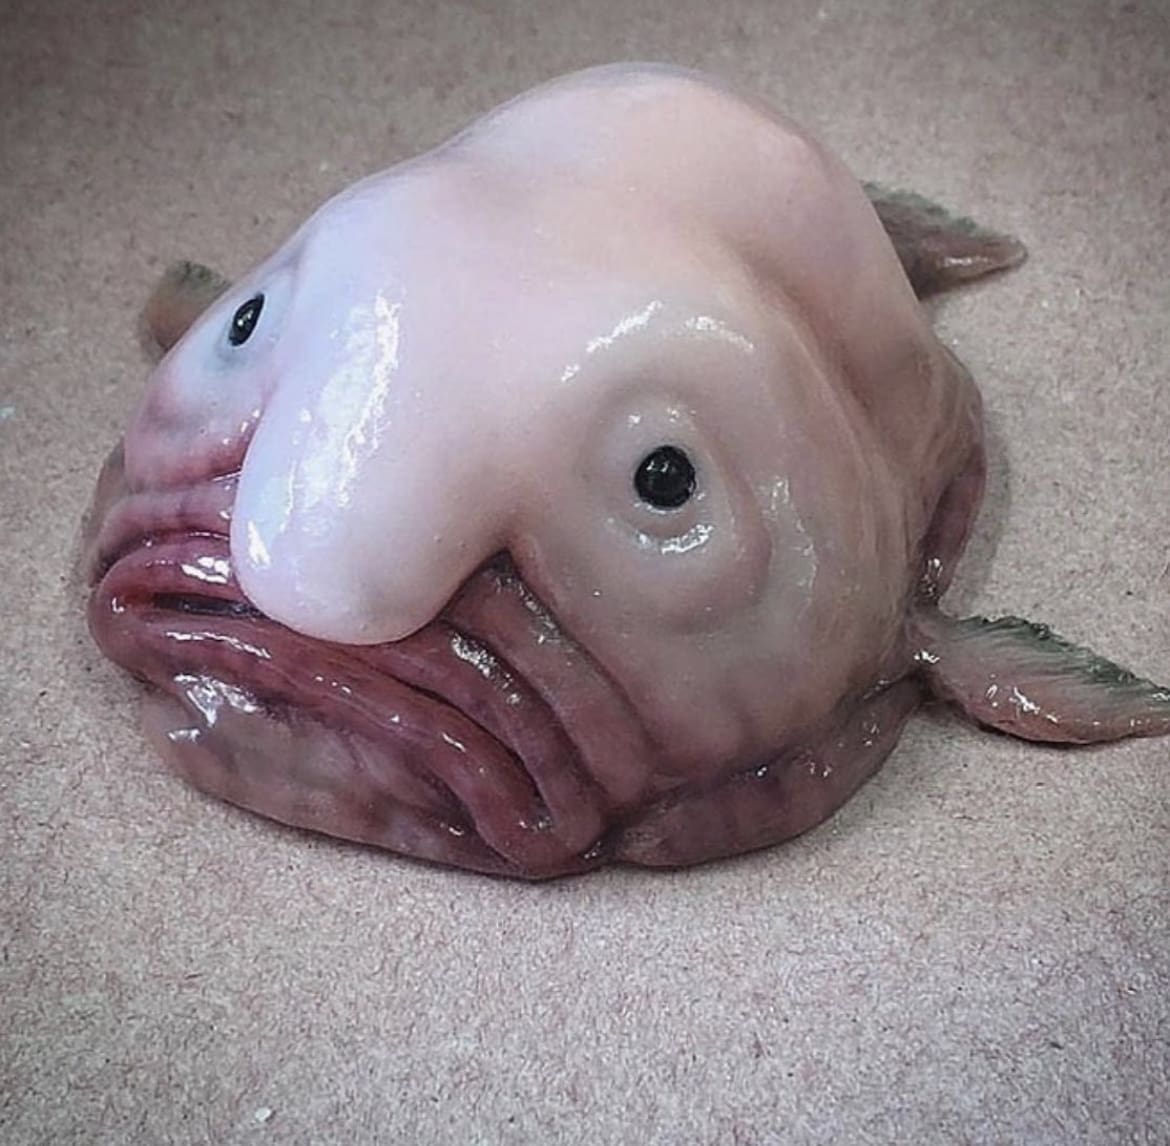 Blobfish: The Underwater Blob of Gloom